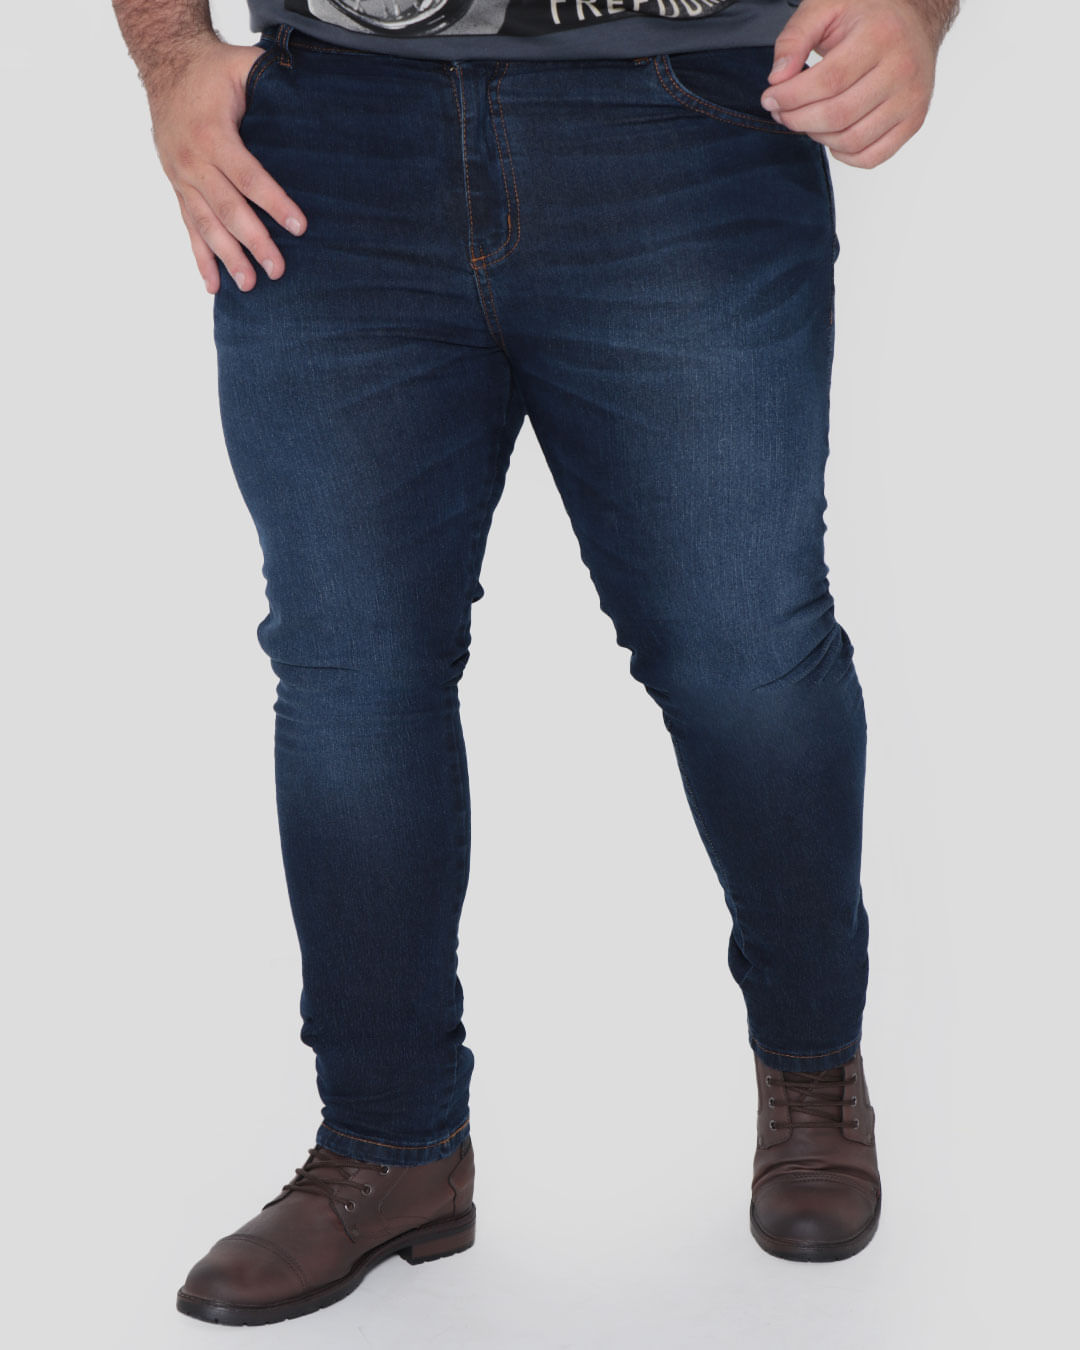 Calca-Jeans-Plus-Size-Masculina-Reta-Azul-Escuro